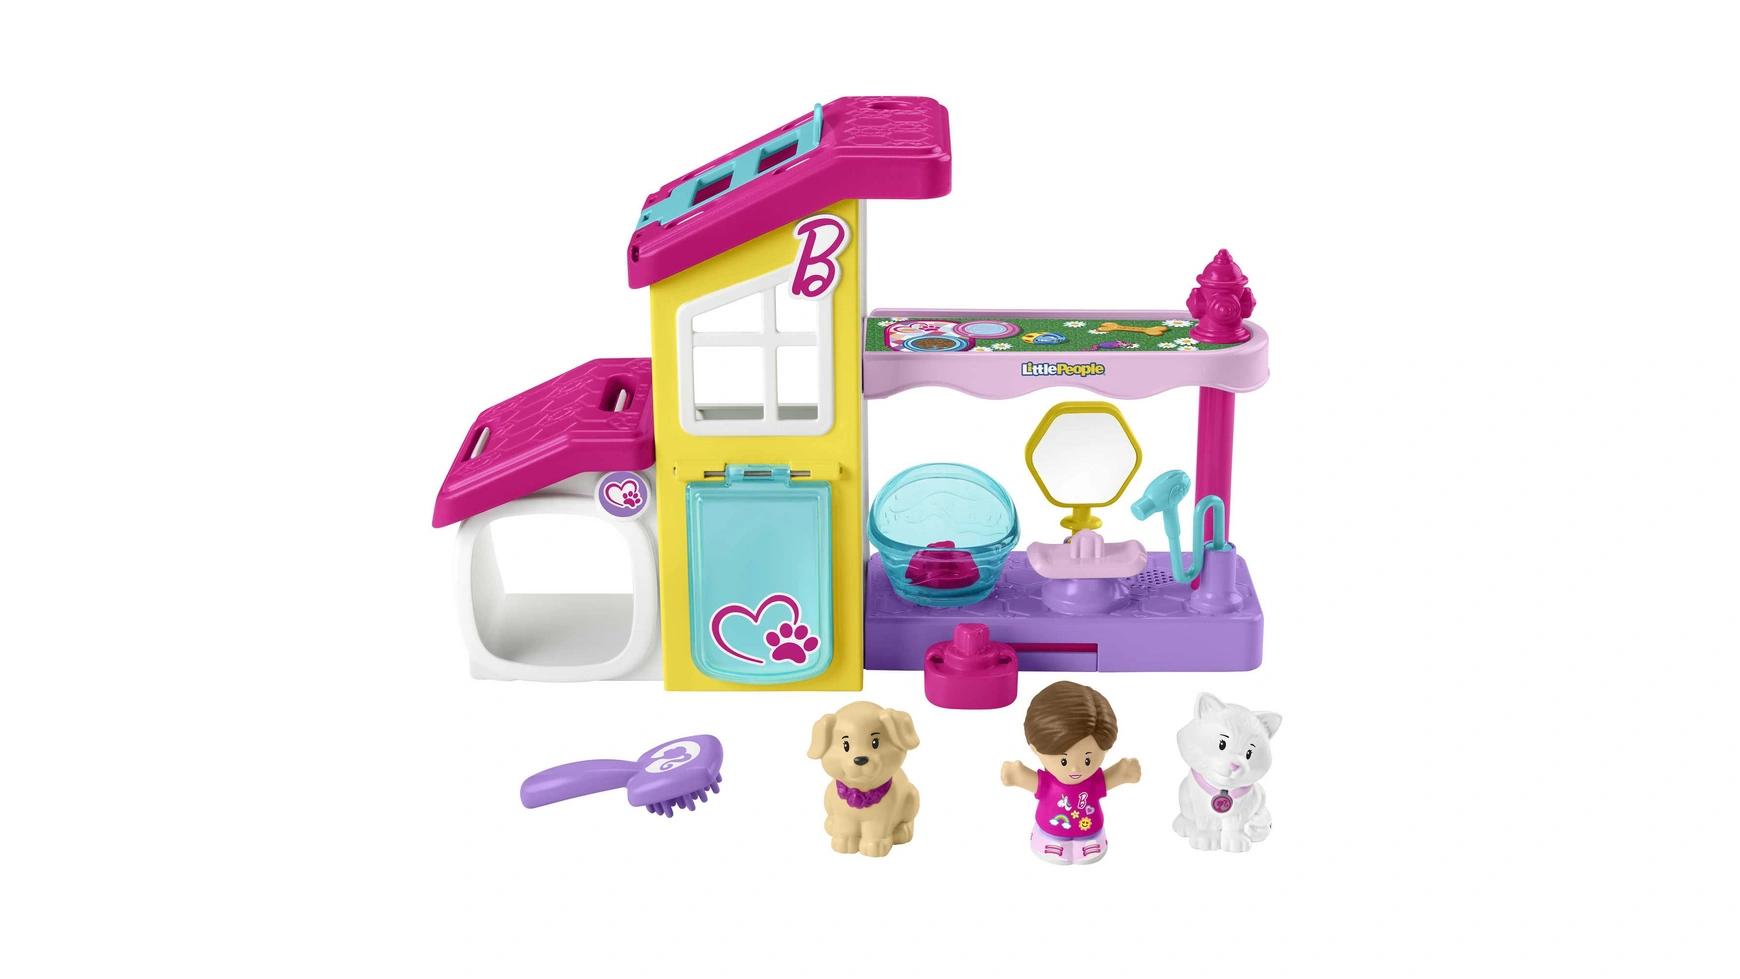 Игровой набор Fisher Price Little People Barbie Animal Station с 3 фигурками набор медсестры